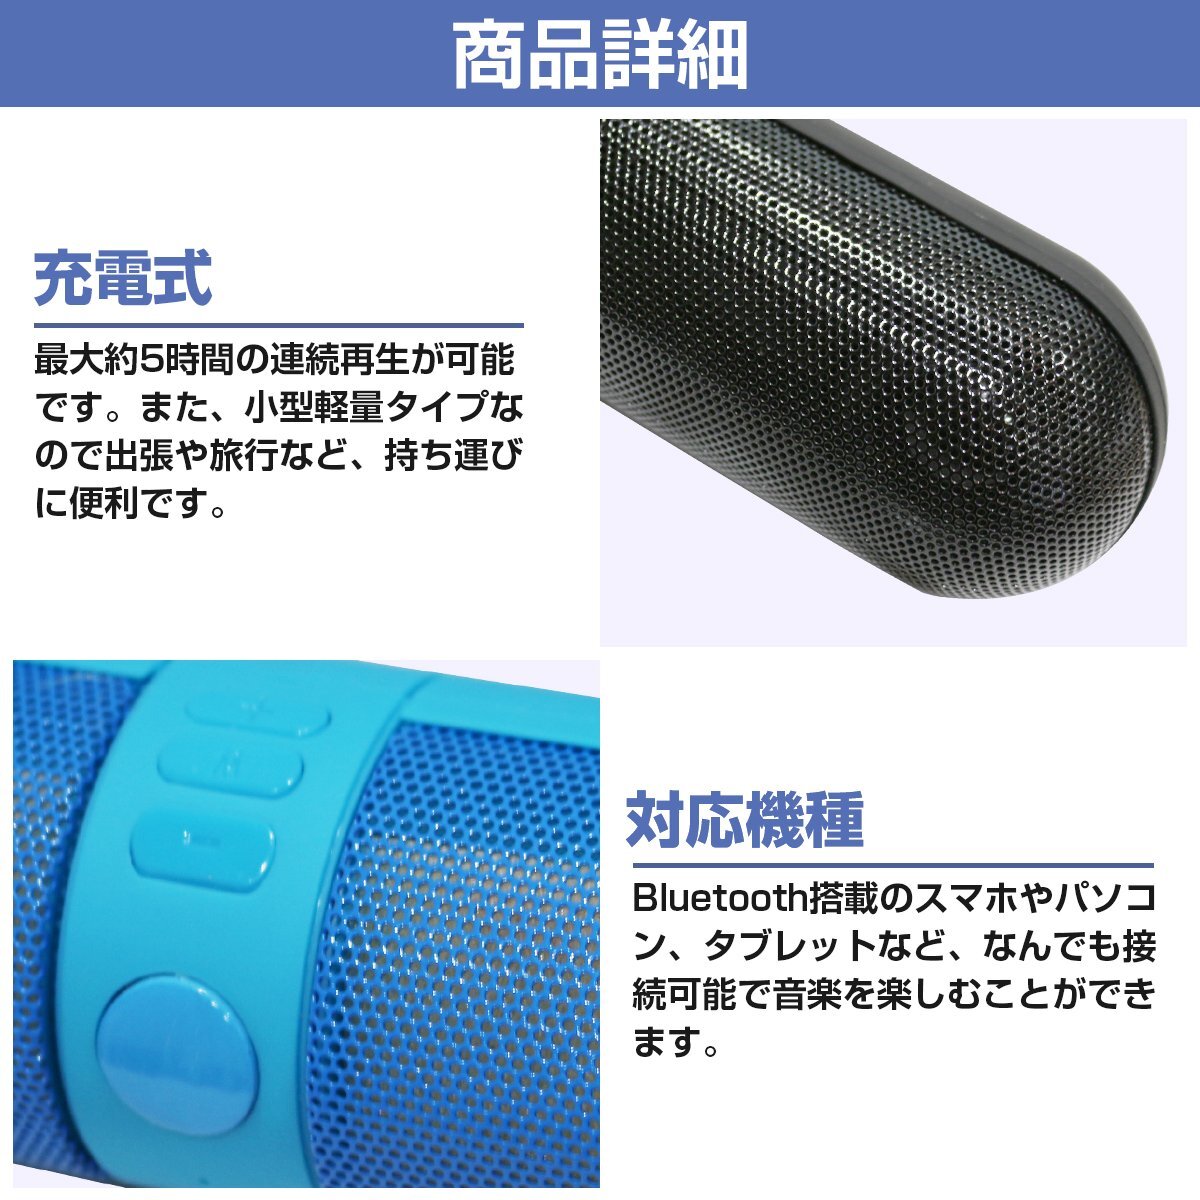 Bluetooth поддержка  беспроводной    динамик  USB эл. зарядка   синий  / синий   беспроводной   смартфон   легкий (по весу)   маленький размер  динамик   море    бассейн  